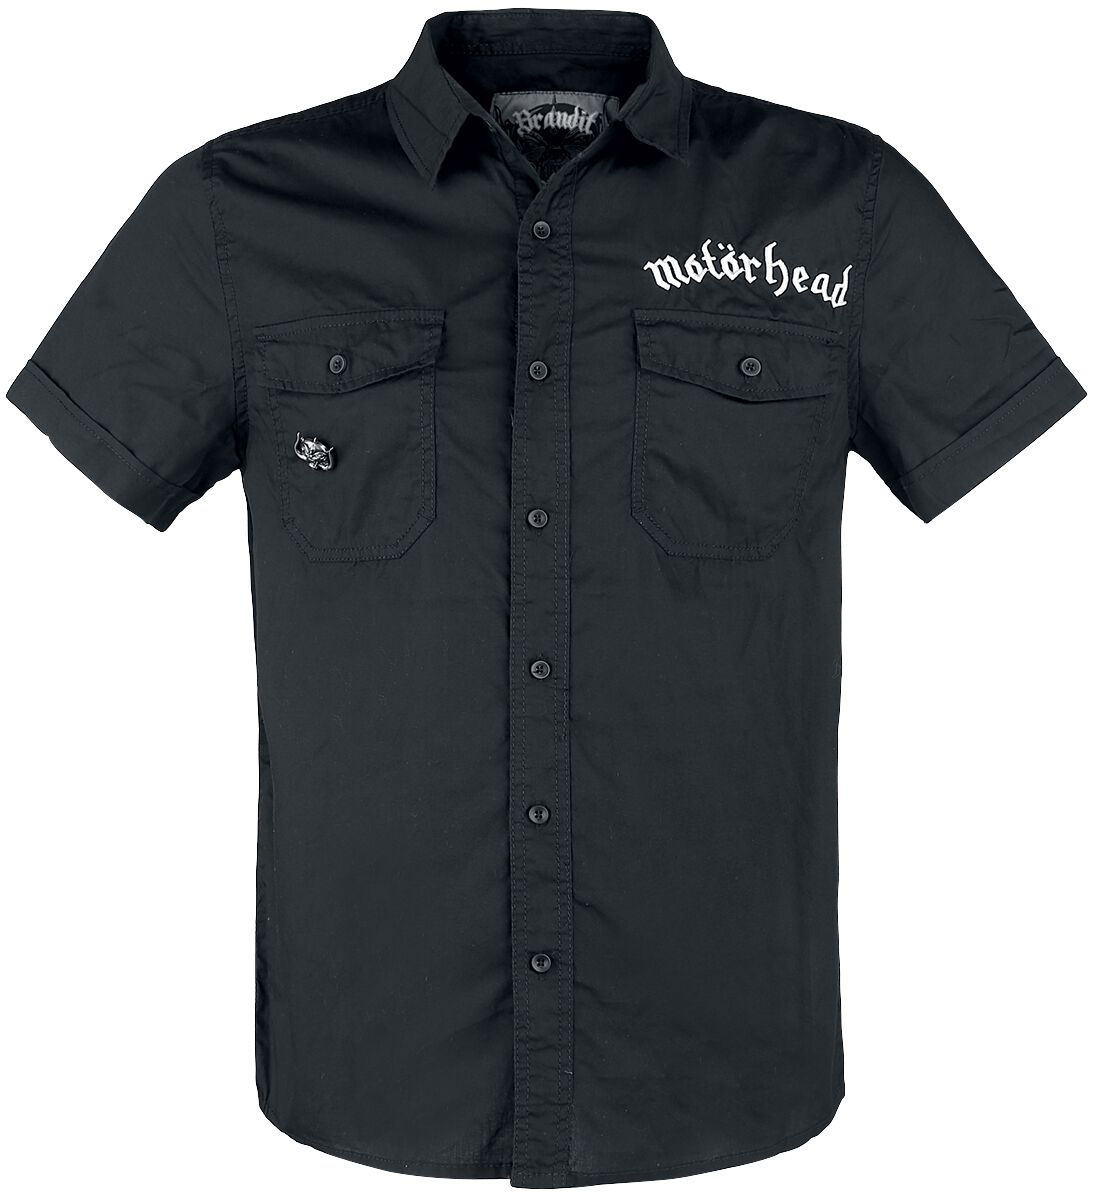 Motörhead Kurzarmhemd - Brandit Bastards - Roadstar Shirt - S bis 5XL - für Männer - Größe 3XL - schwarz  - Lizenziertes Merchandise!